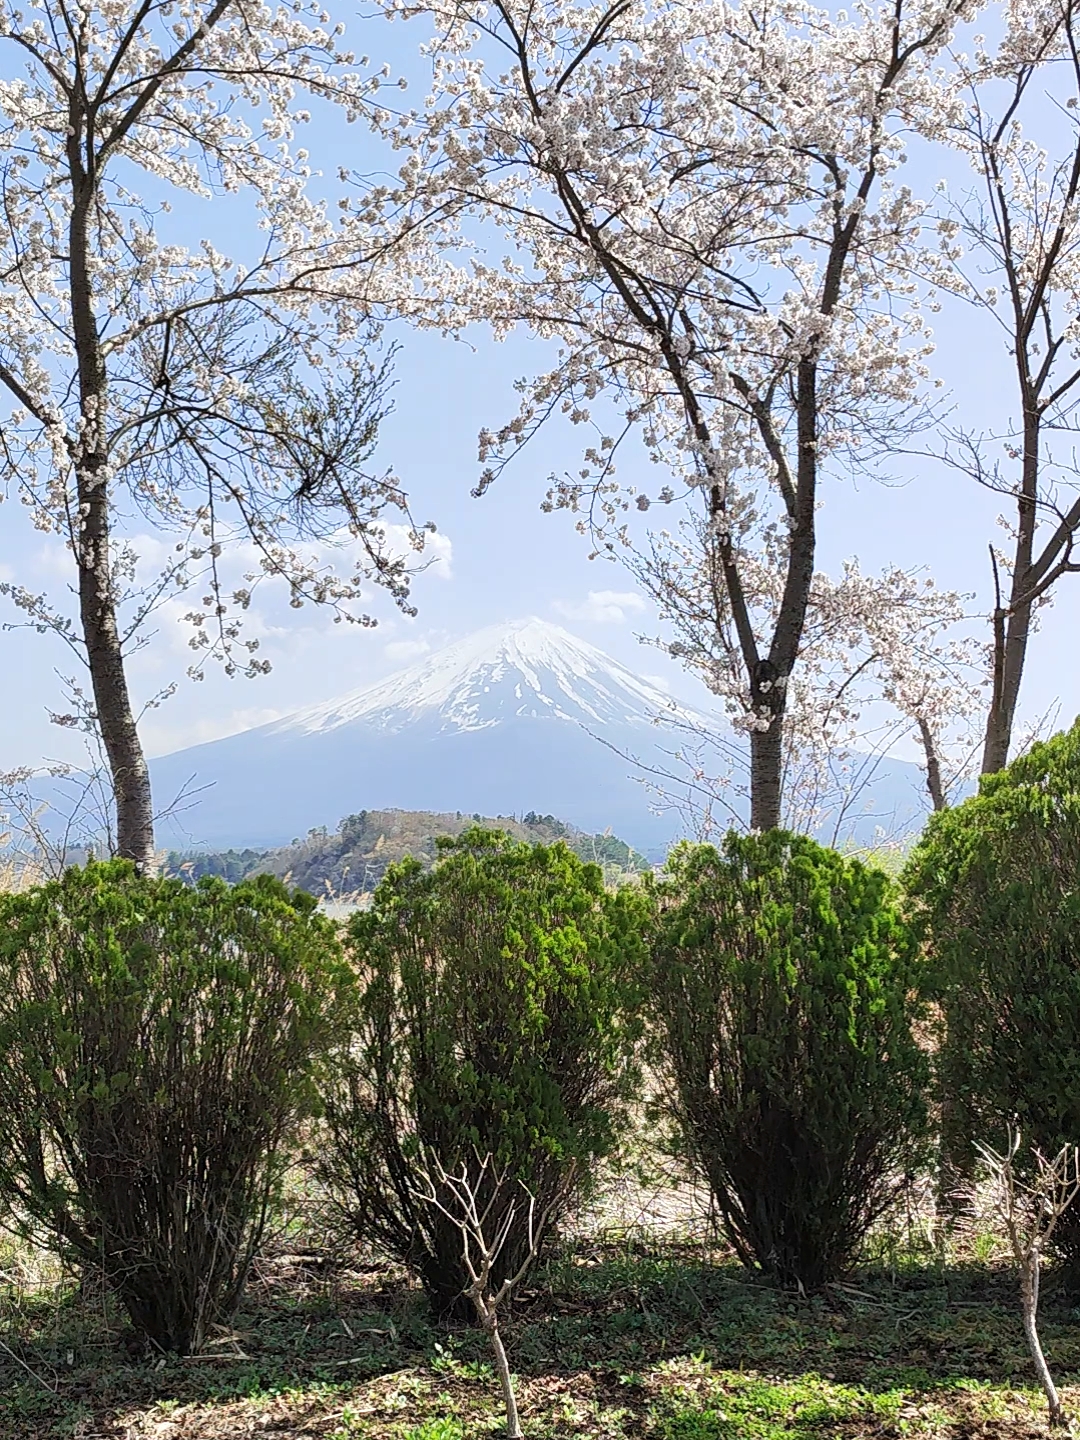 天高云淡，樱花盛开。伫立在樱花树下，对面的富士山清晰可见。漫步在樱花林中，粉白色的花瓣时有飘落，享受